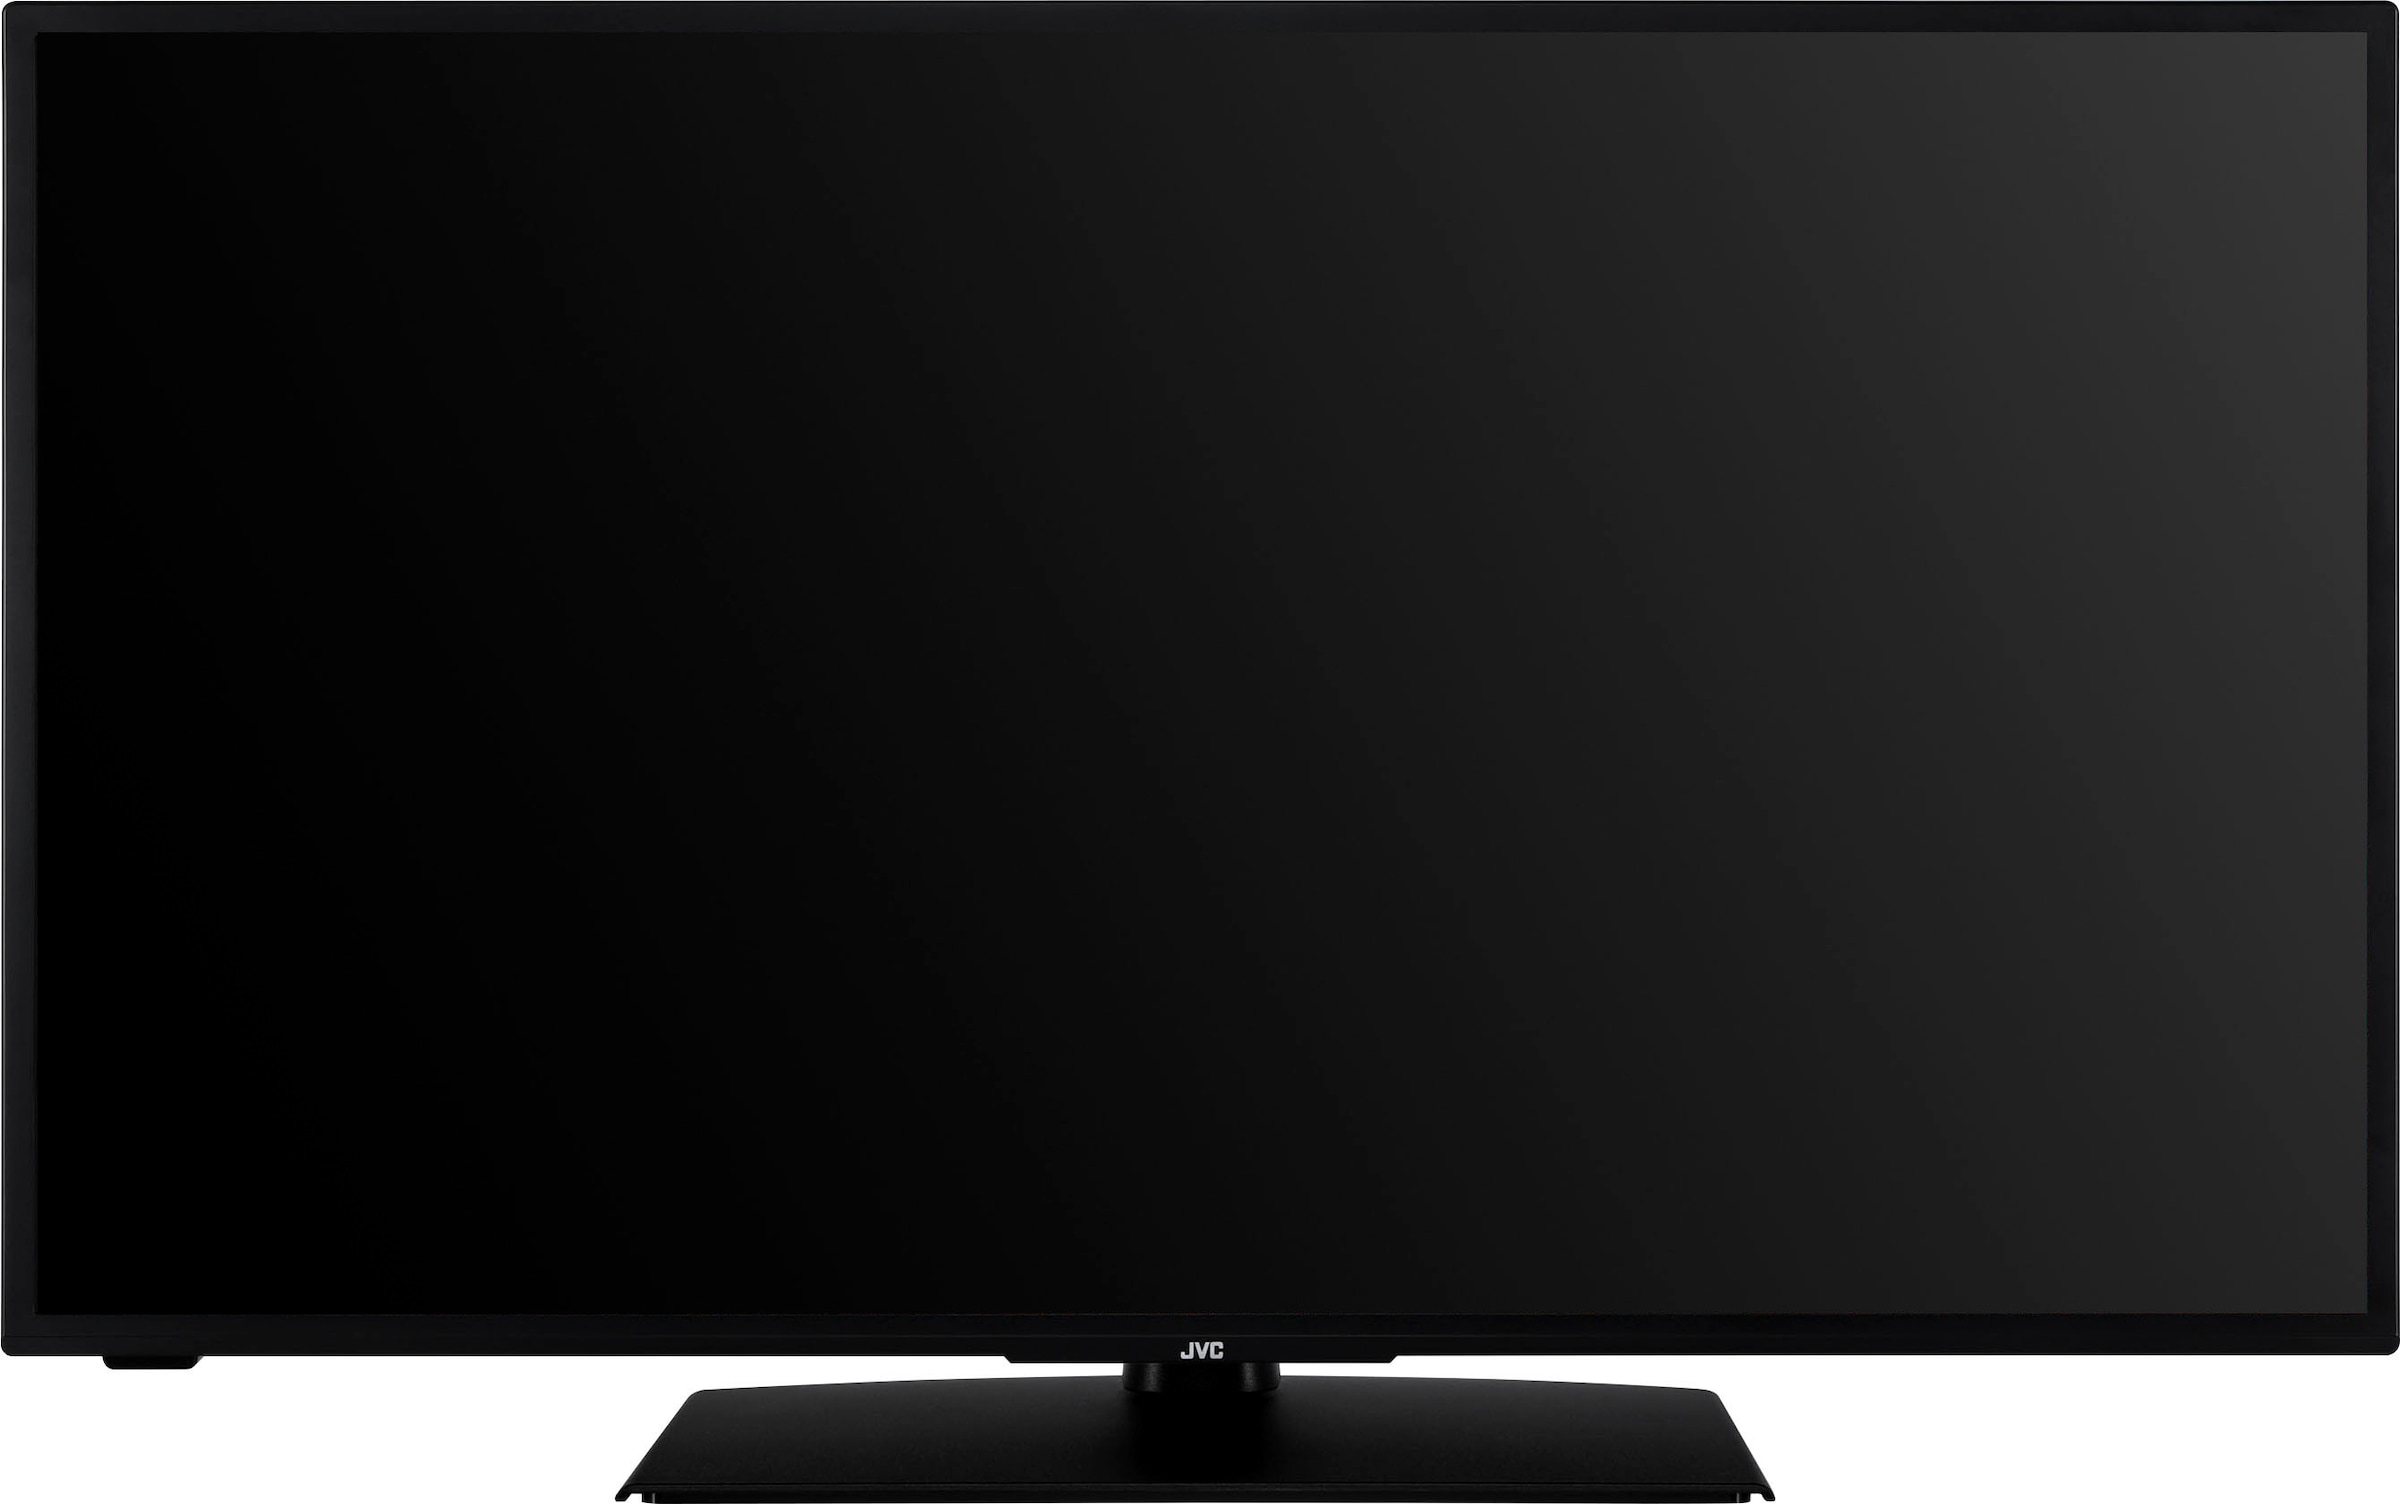 JVC LED-Fernseher »LT-43VF5156«, 108 cm/43 Zoll, Full HD, Smart-TV